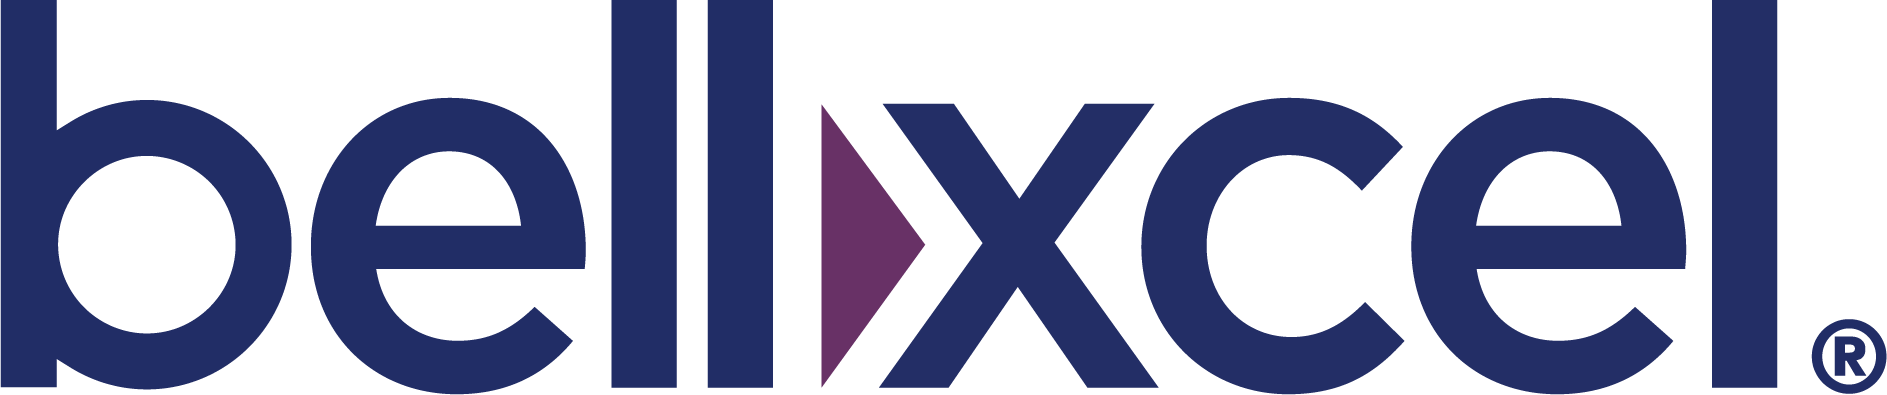 BellXcel_Logo_BluePurple